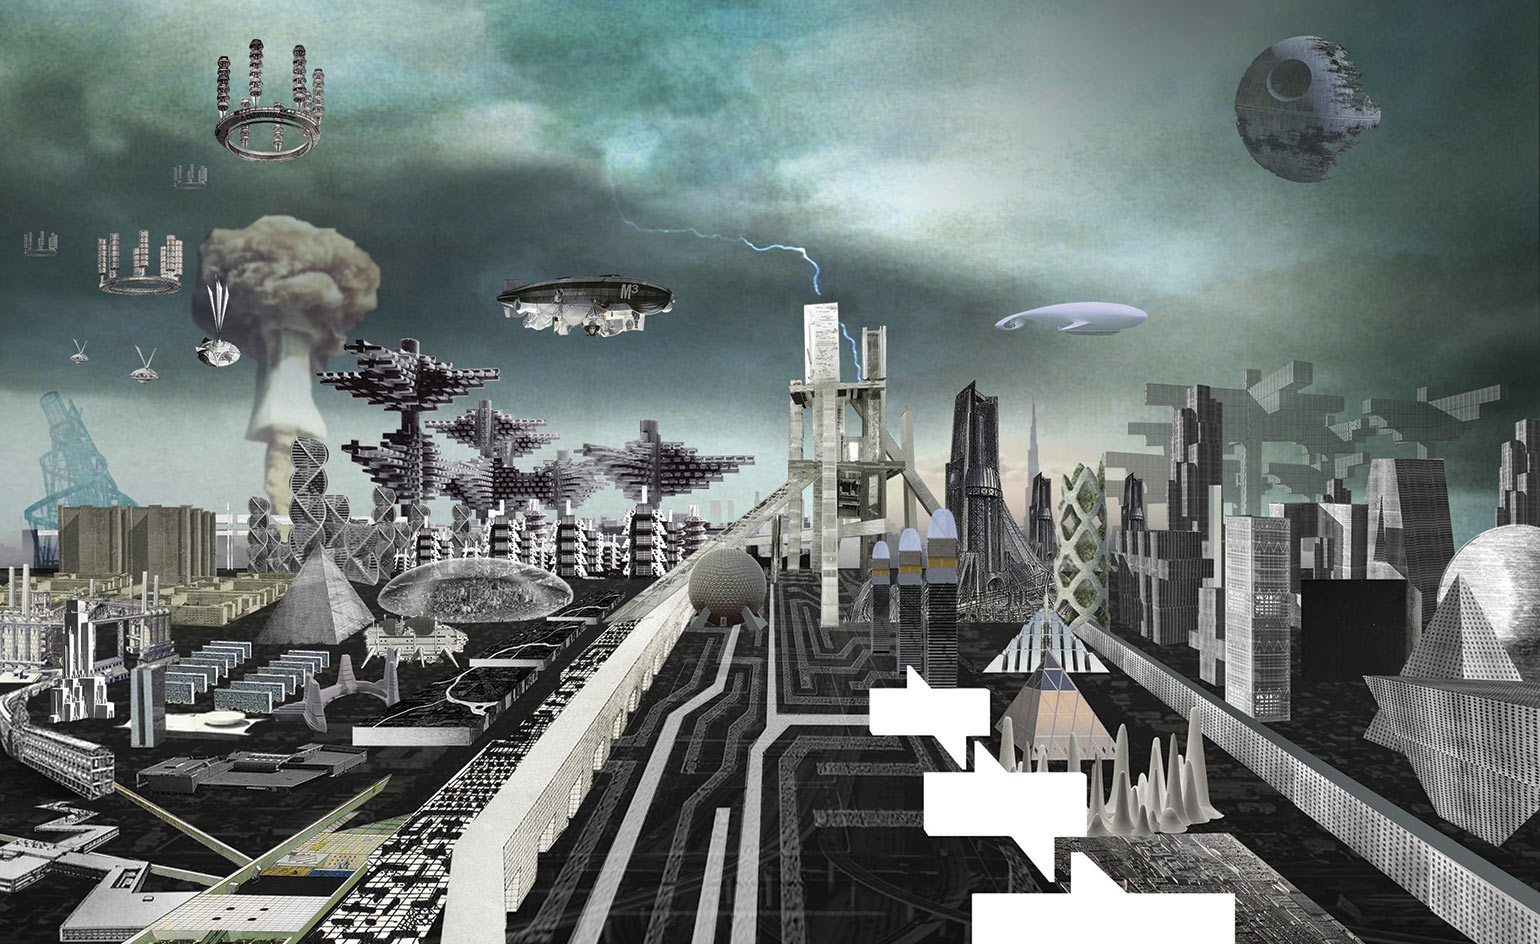 Architecture Exhibition Utopia Dystopia A Paradigm Shift Opens